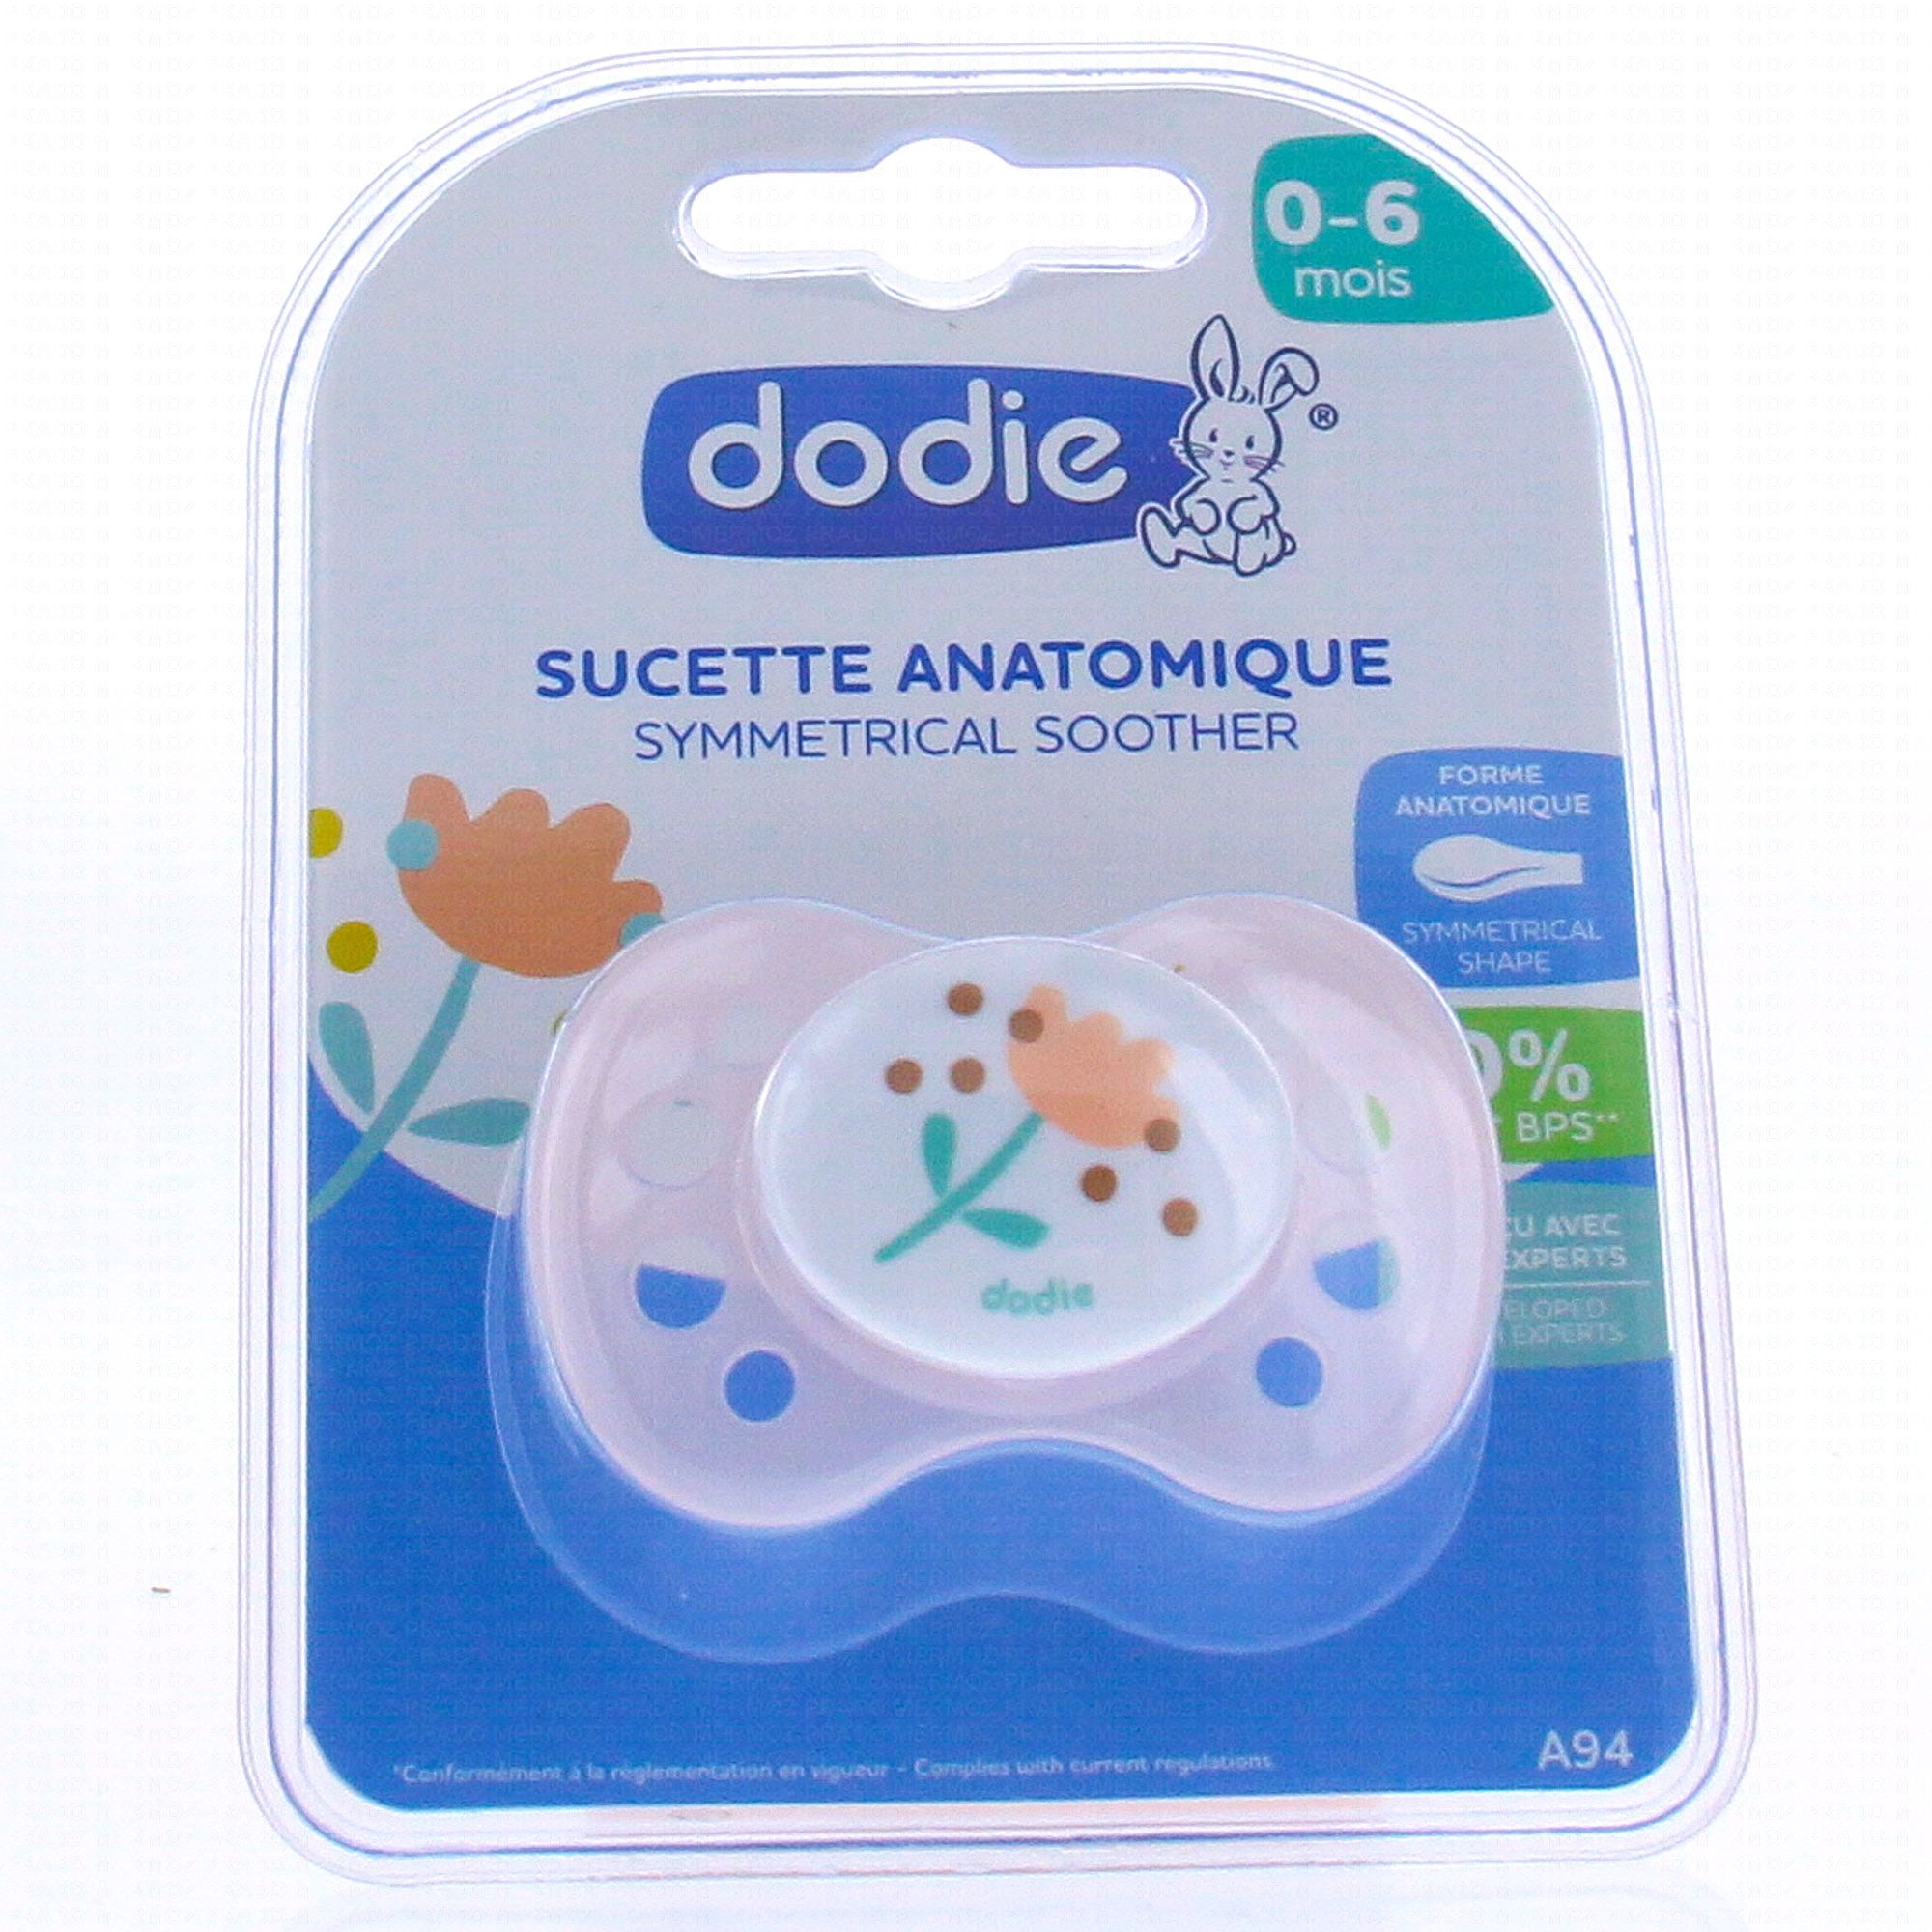 Dodie - Sucette anatomique symétrique phosphorescente silicone 0-6